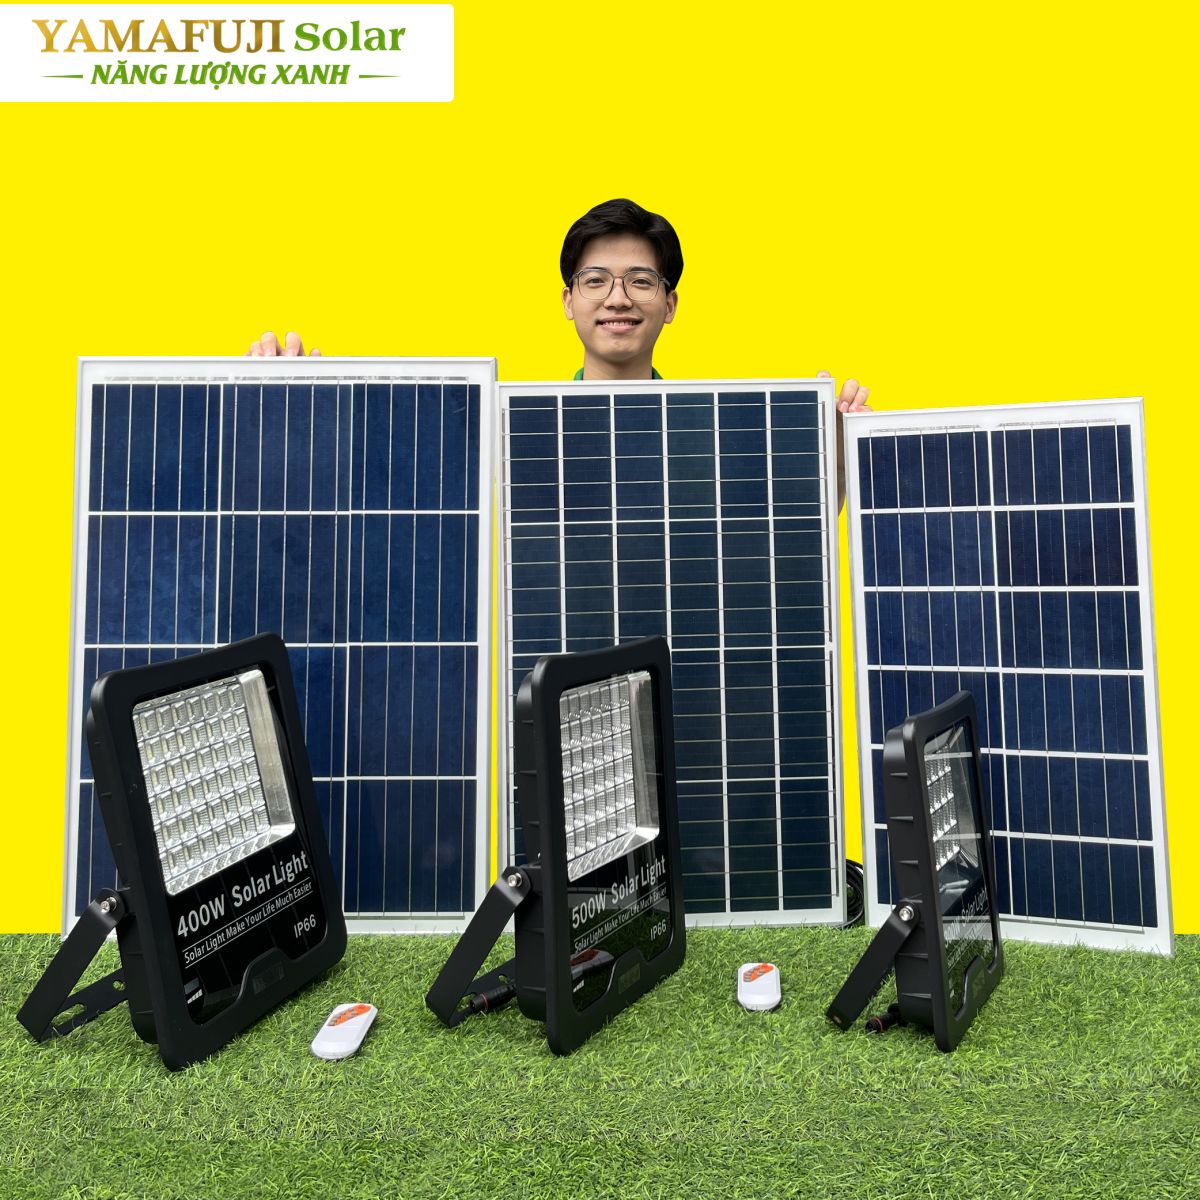 Đèn năng lượng mặt trời Yamafuji Solar SFL02-400W chất lượng